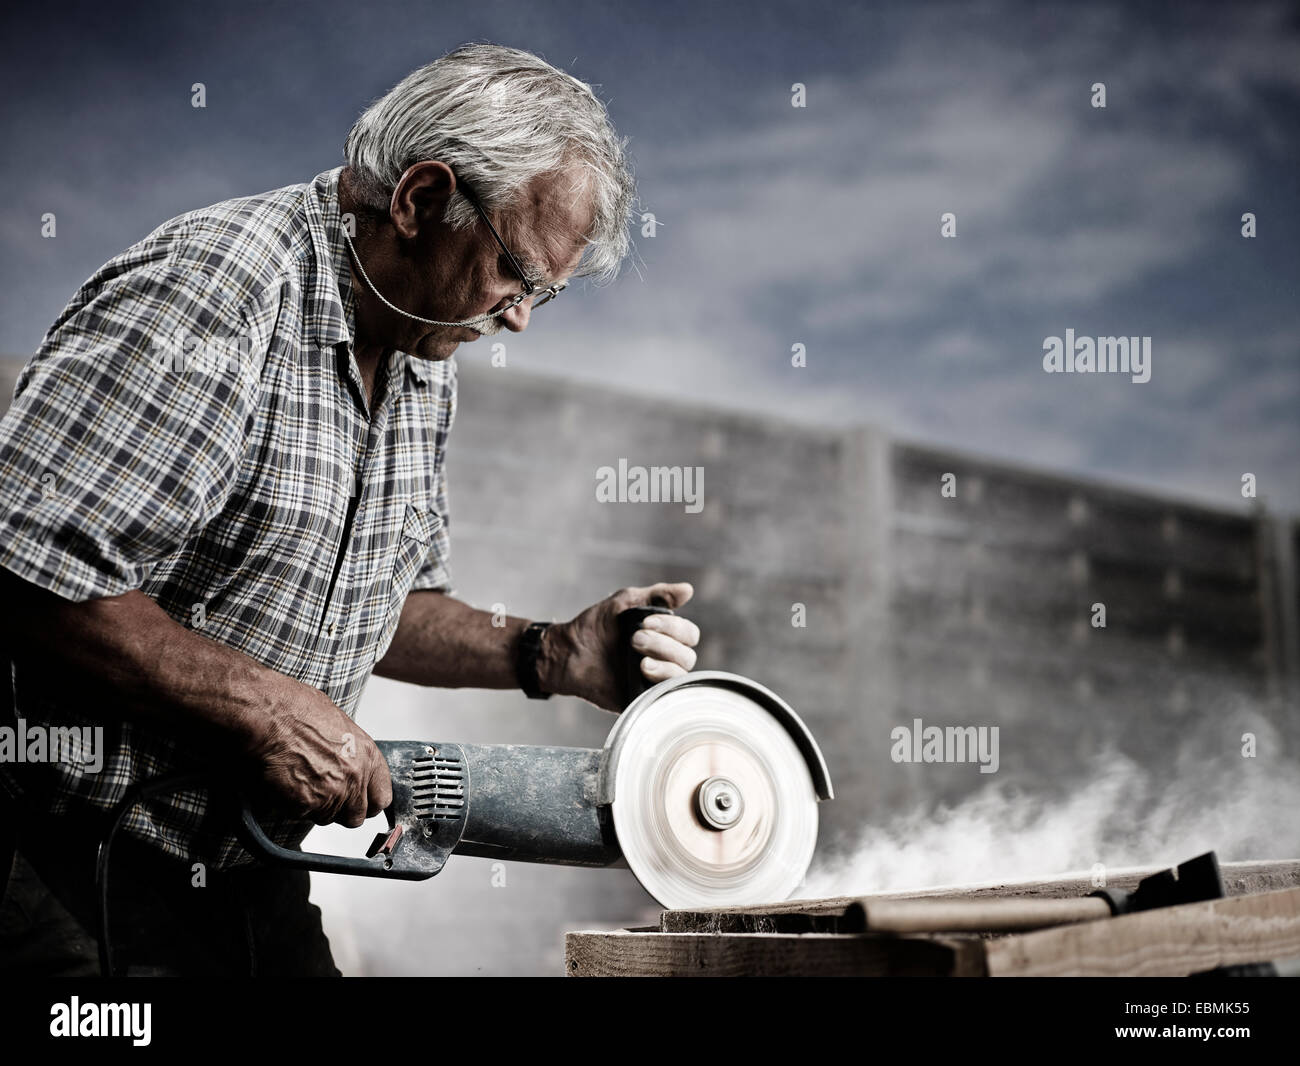 Pietra da taglio immagini e fotografie stock ad alta risoluzione - Alamy